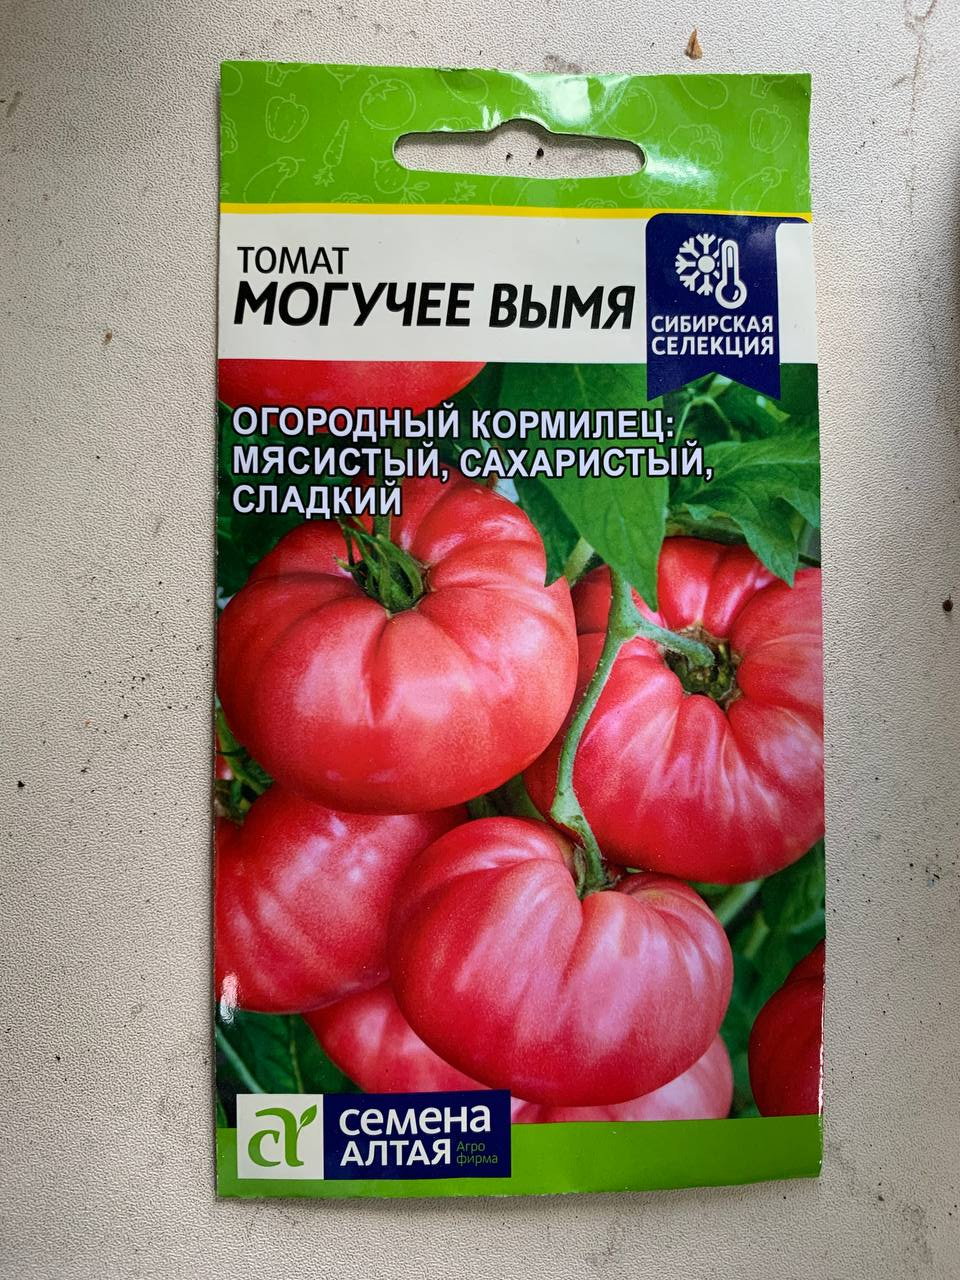 Семена алтая томаты текутьев семен юрьевич